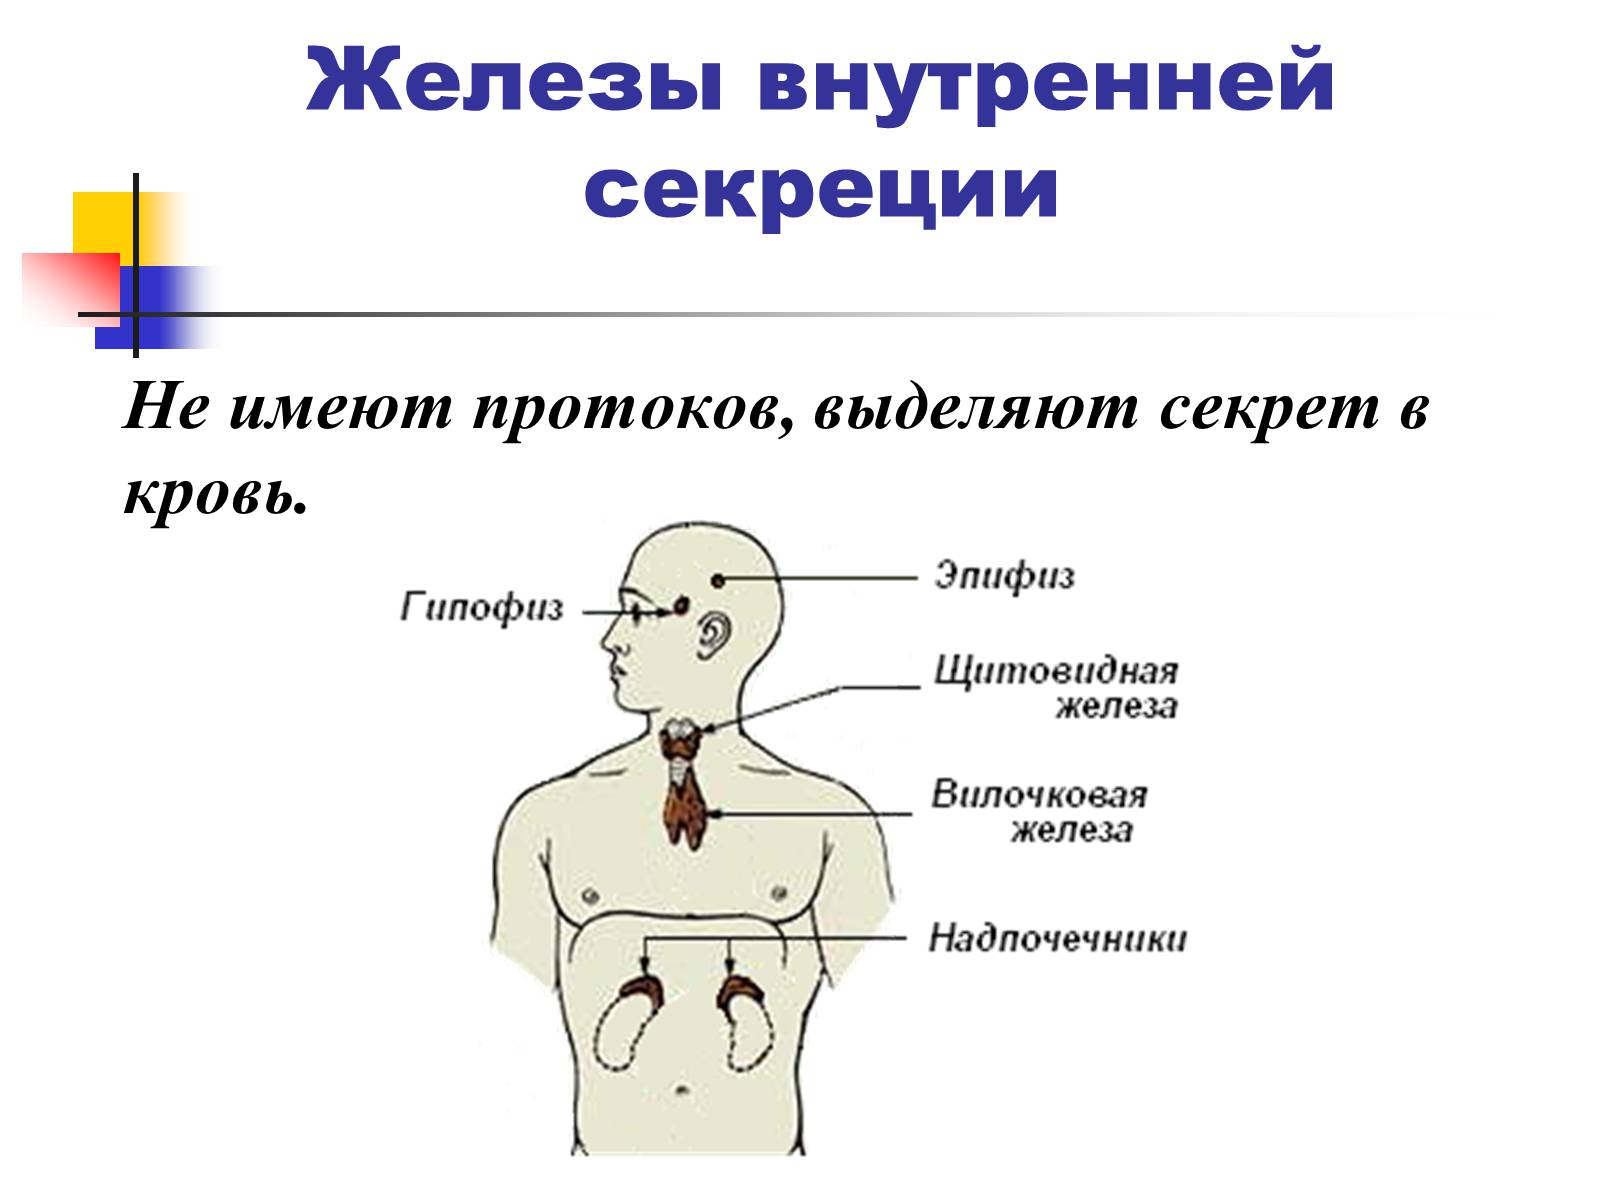 Эпифиз гипофиз надпочечники. Потовые железы внутренней секреции. Желез смешанной внутренней и внешней секреции. Местоположение желез внутренней секреции. Железы внешней секреции эпифиз щитовидная железа.